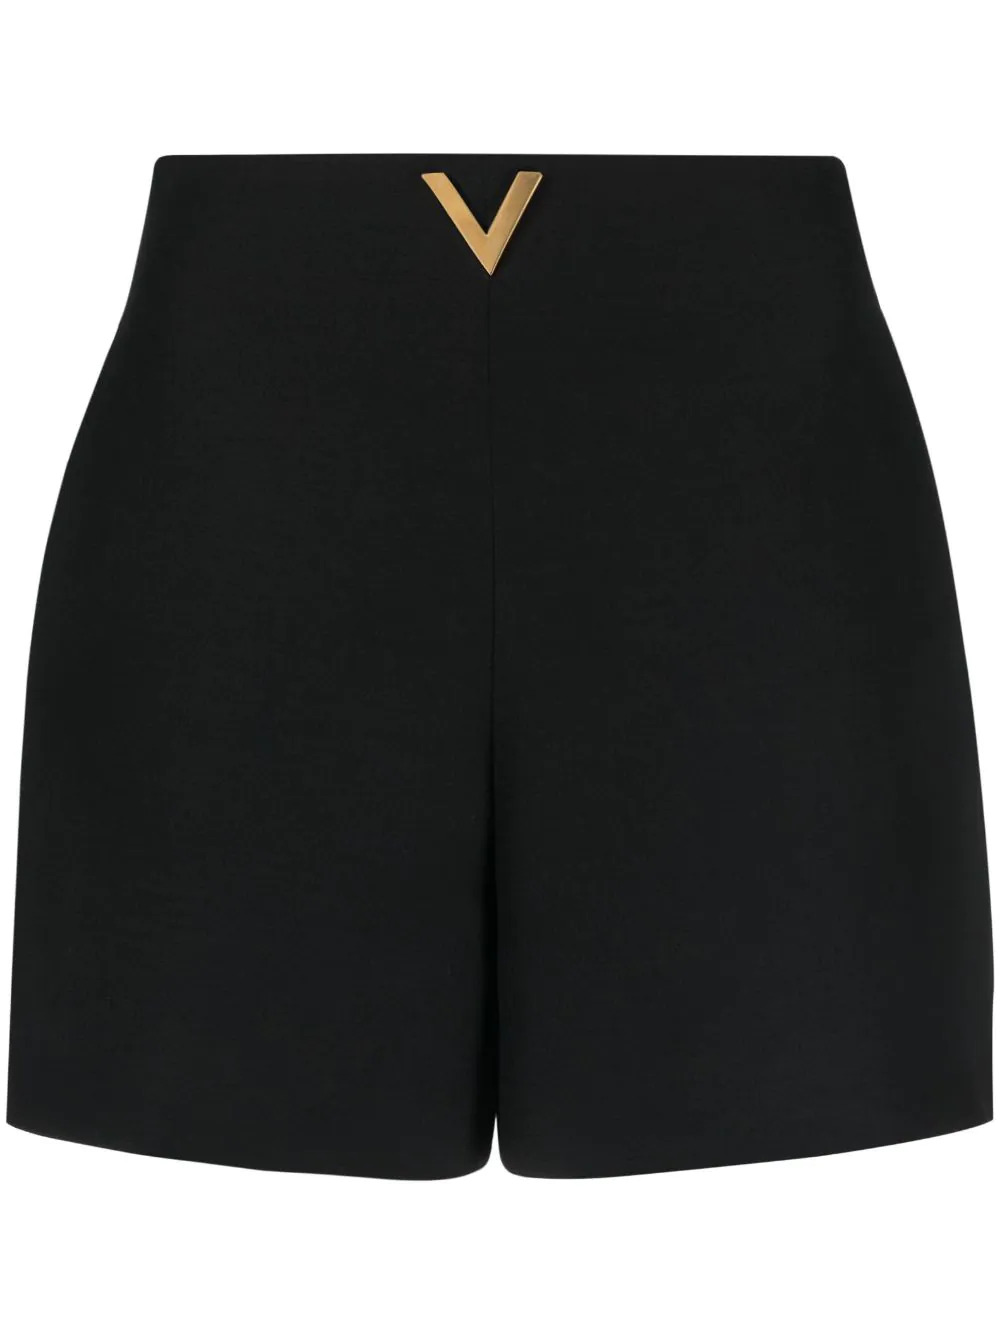 V-Logo Shorts in Schwarz